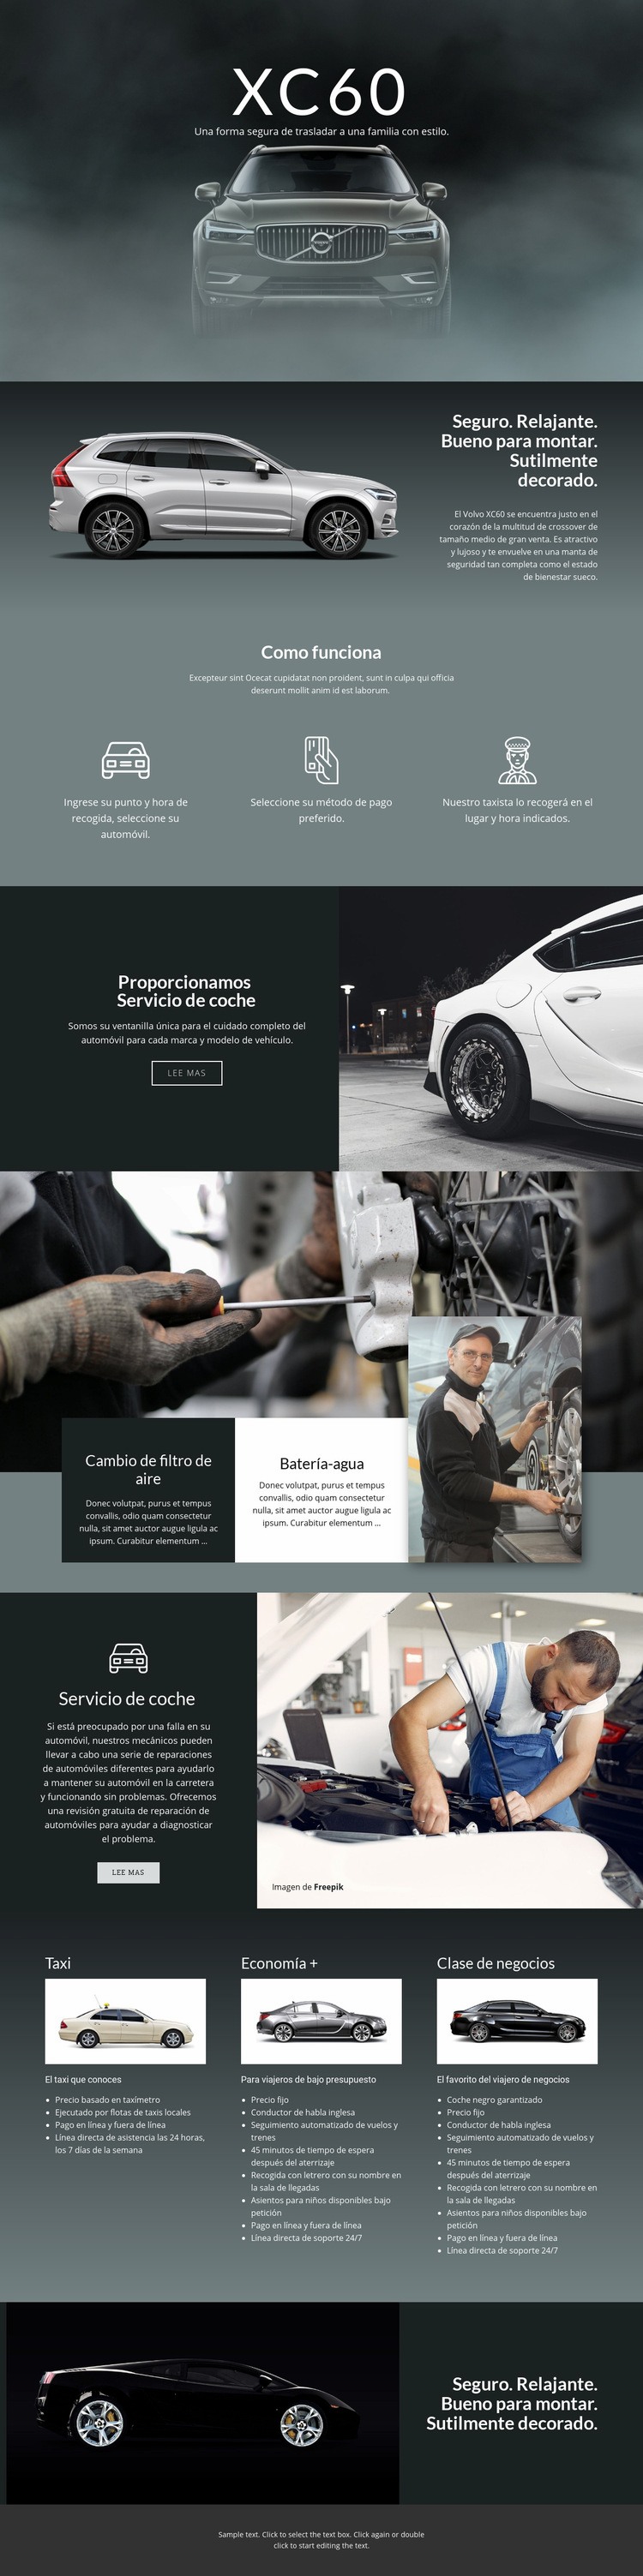 Coche todoterreno Volvo XC60 Plantillas de creación de sitios web